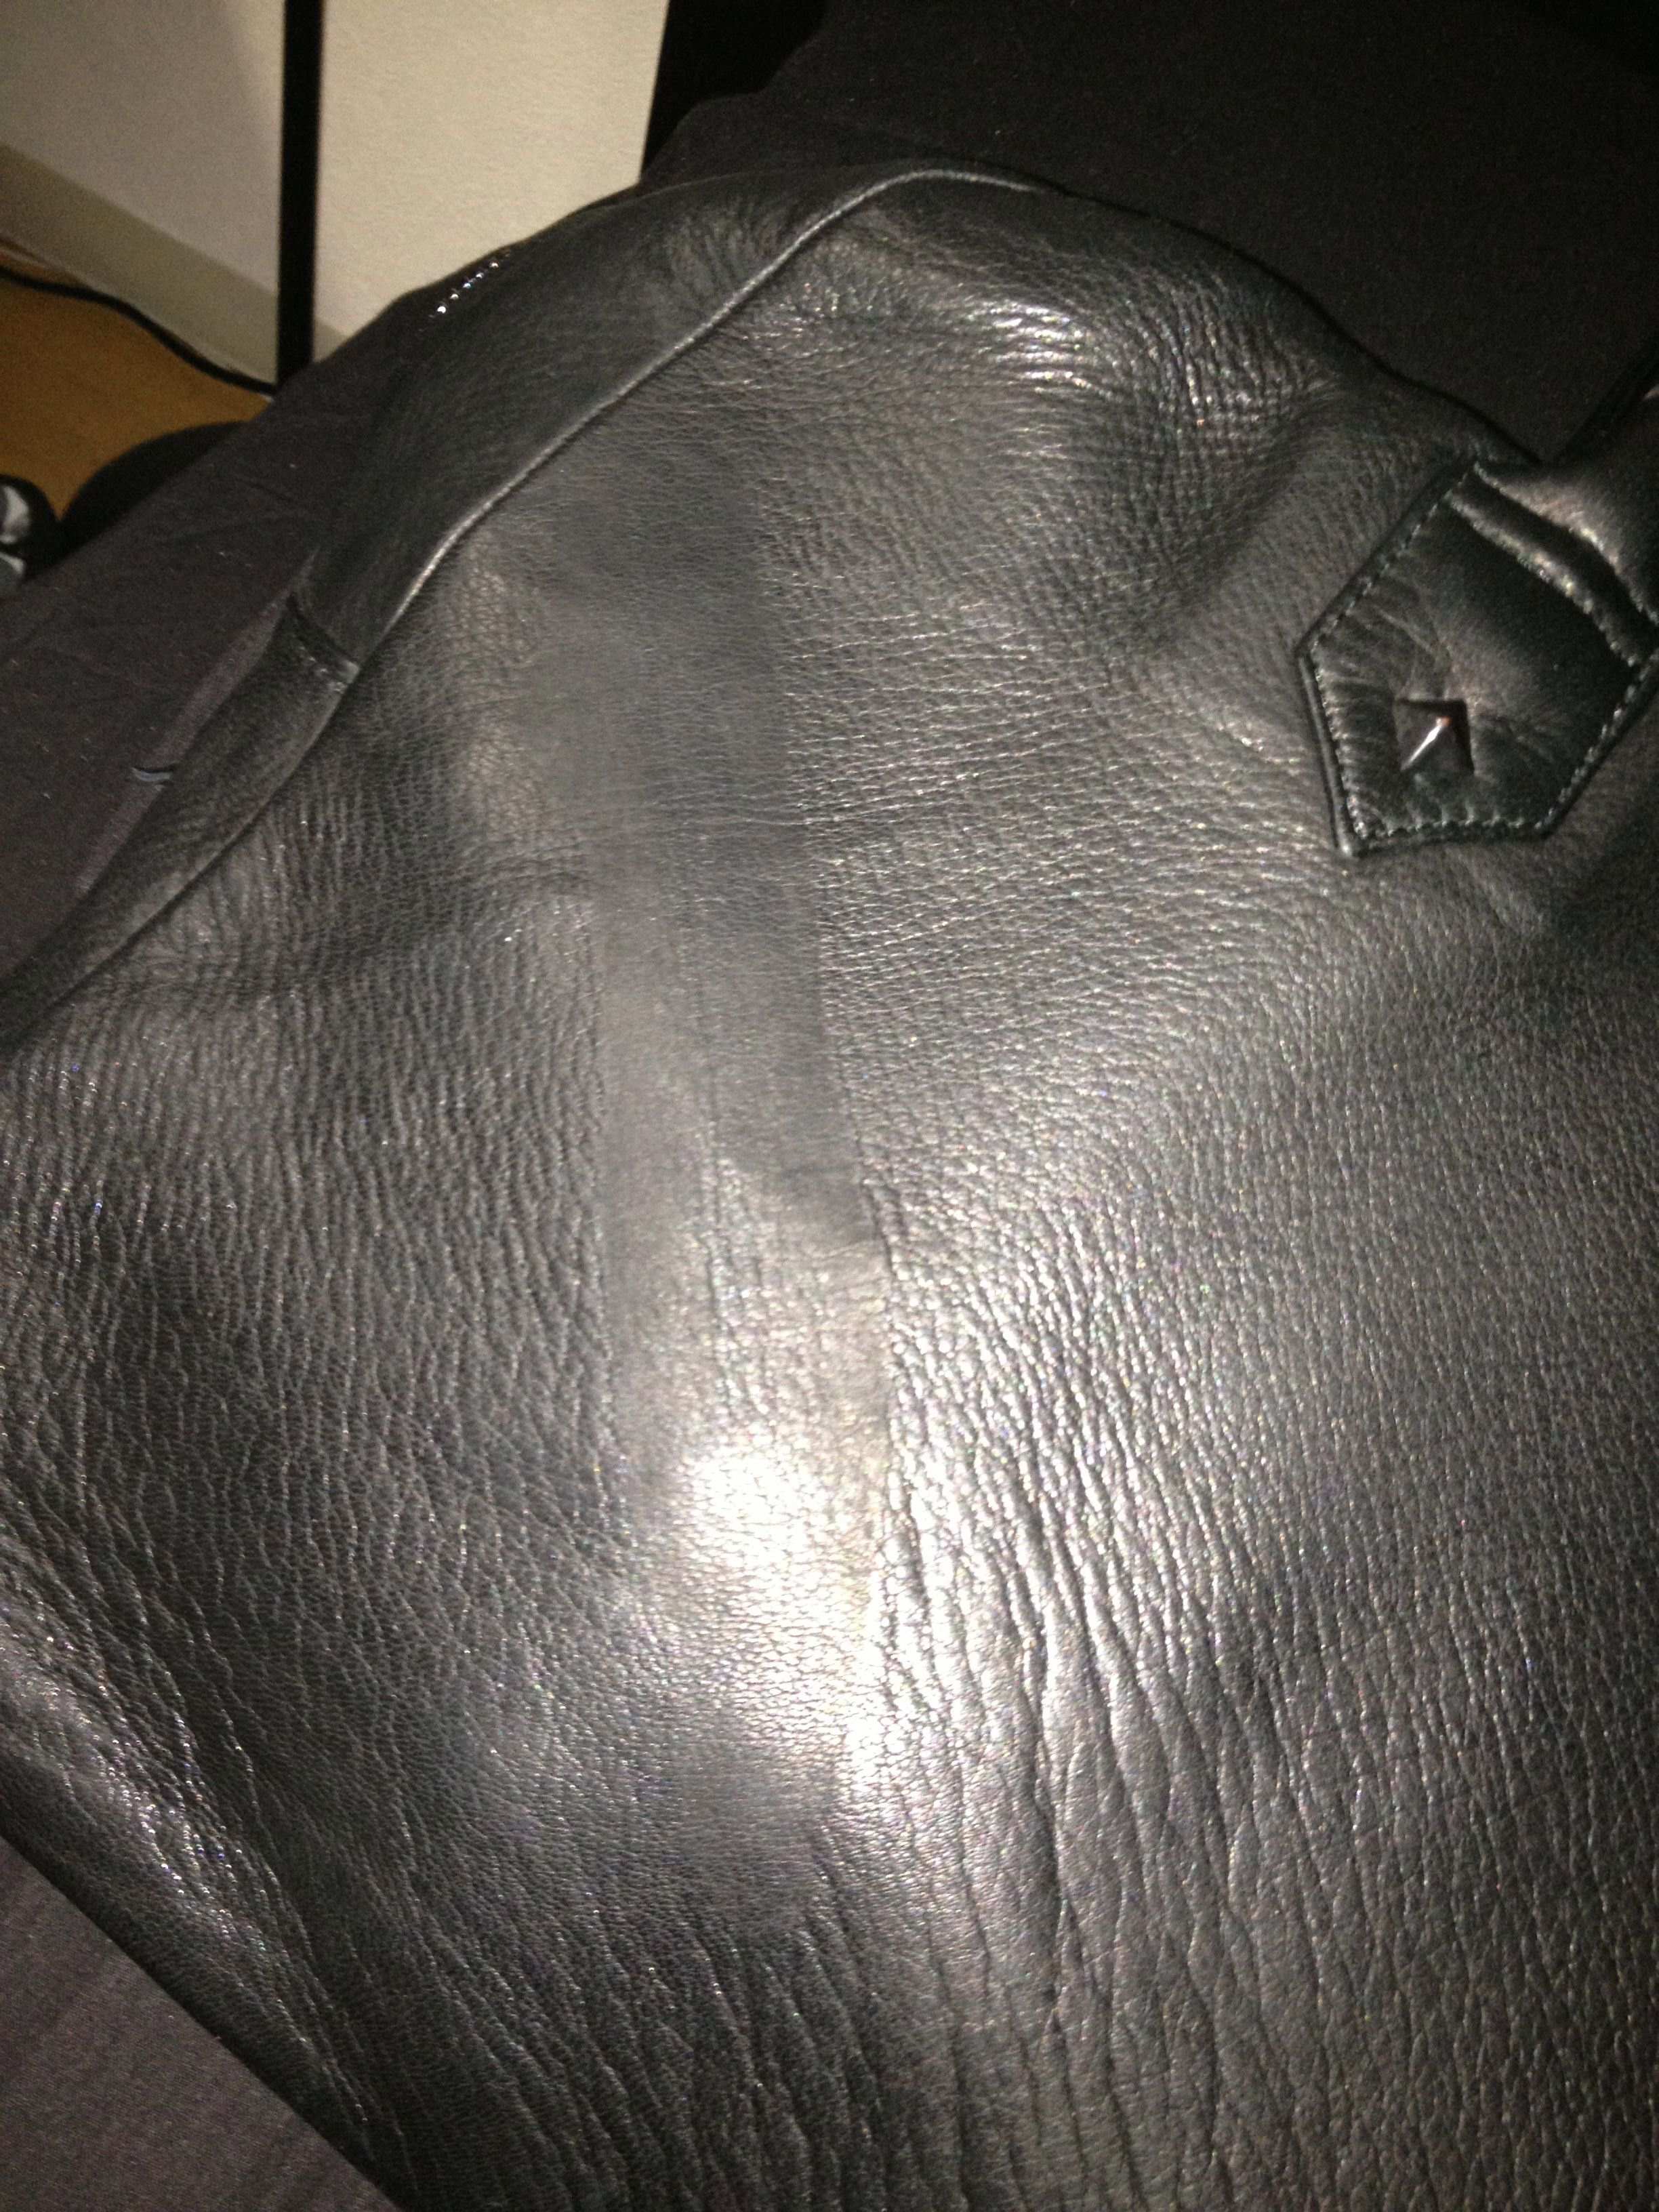 [バッグ・鞄] ディアスキンボストンバックに型が付いてしまいました 